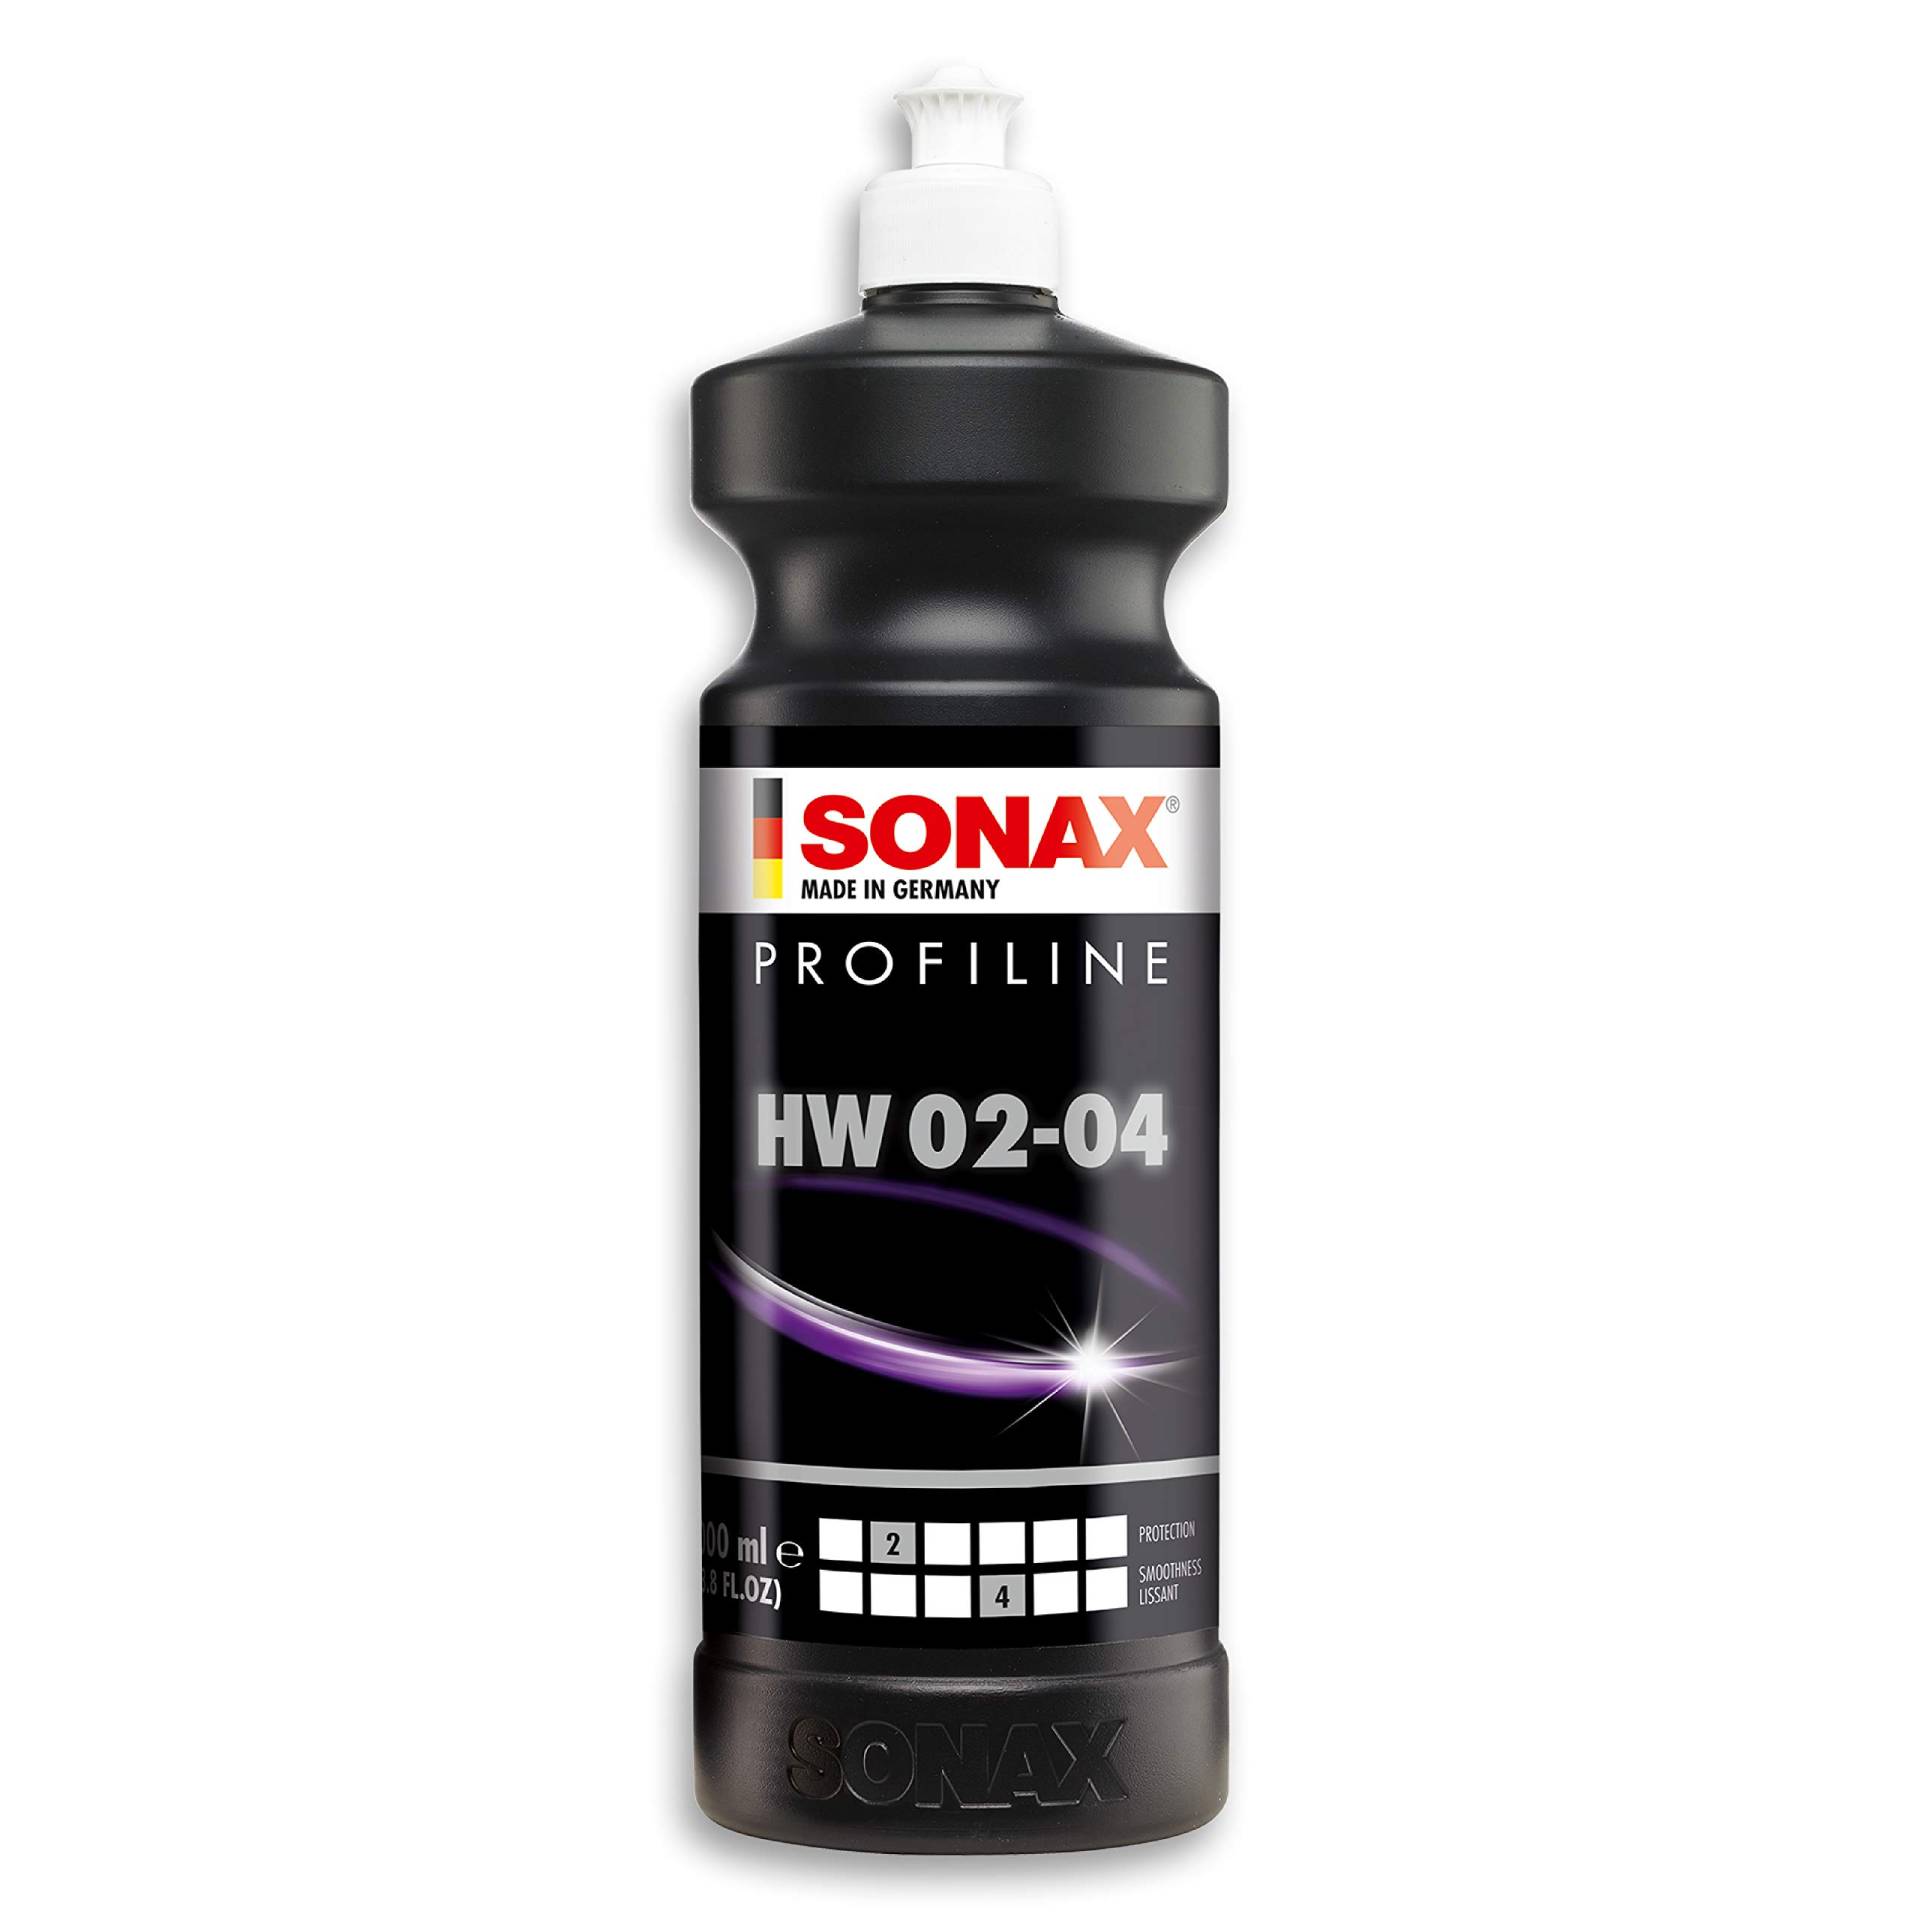 SONAX PROFILINE HW 02-04 (1 Liter) Lackierverträgliche Lack-Konservierung für spiegelnden Hochglanz / Art-Nr. 02803000 von SONAX